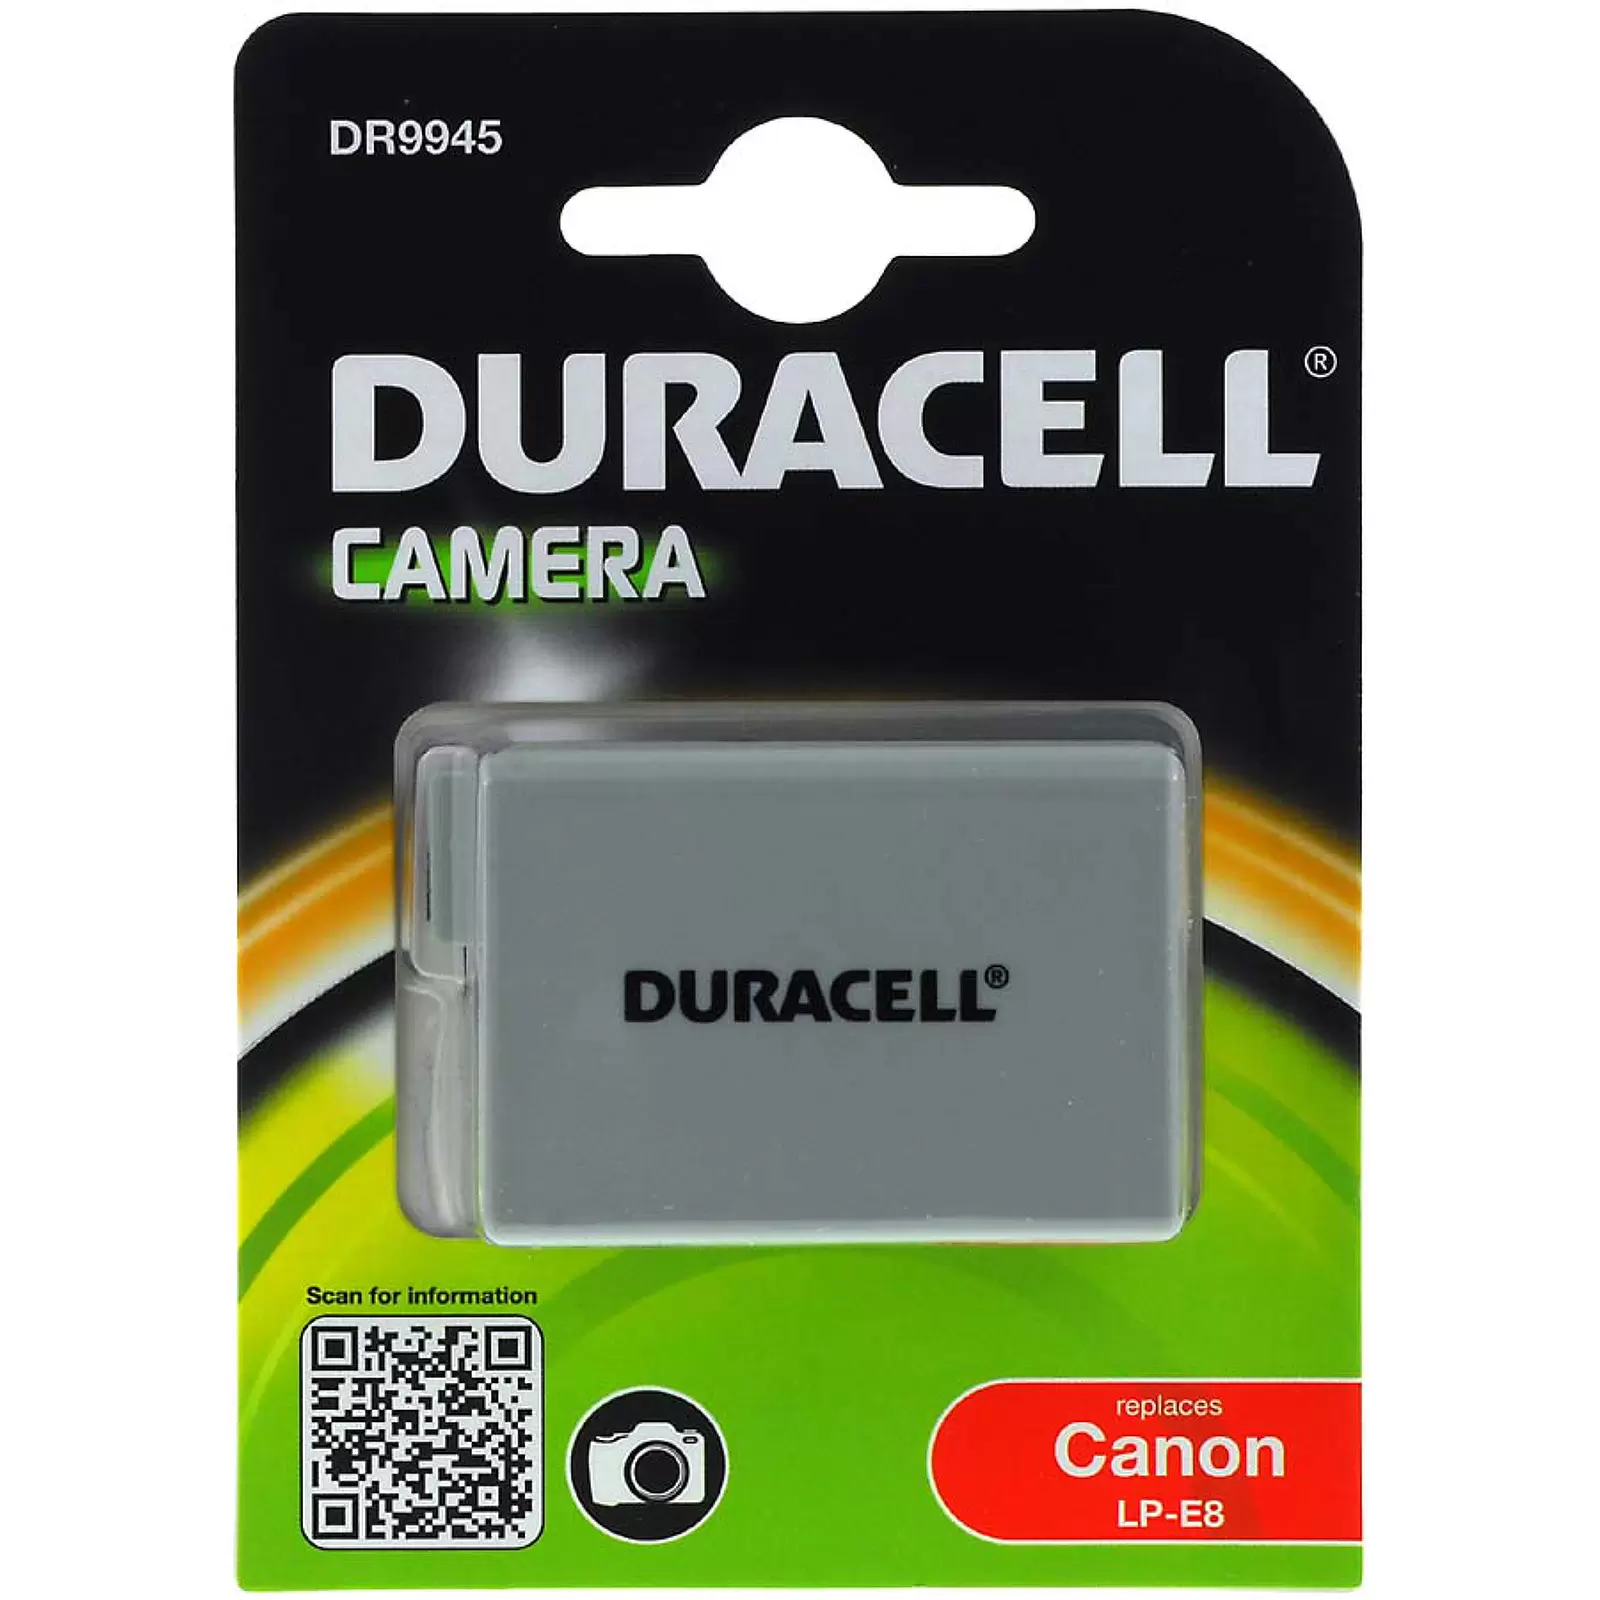 Duracell Akku DR9945 für Canon Typ LP-E8